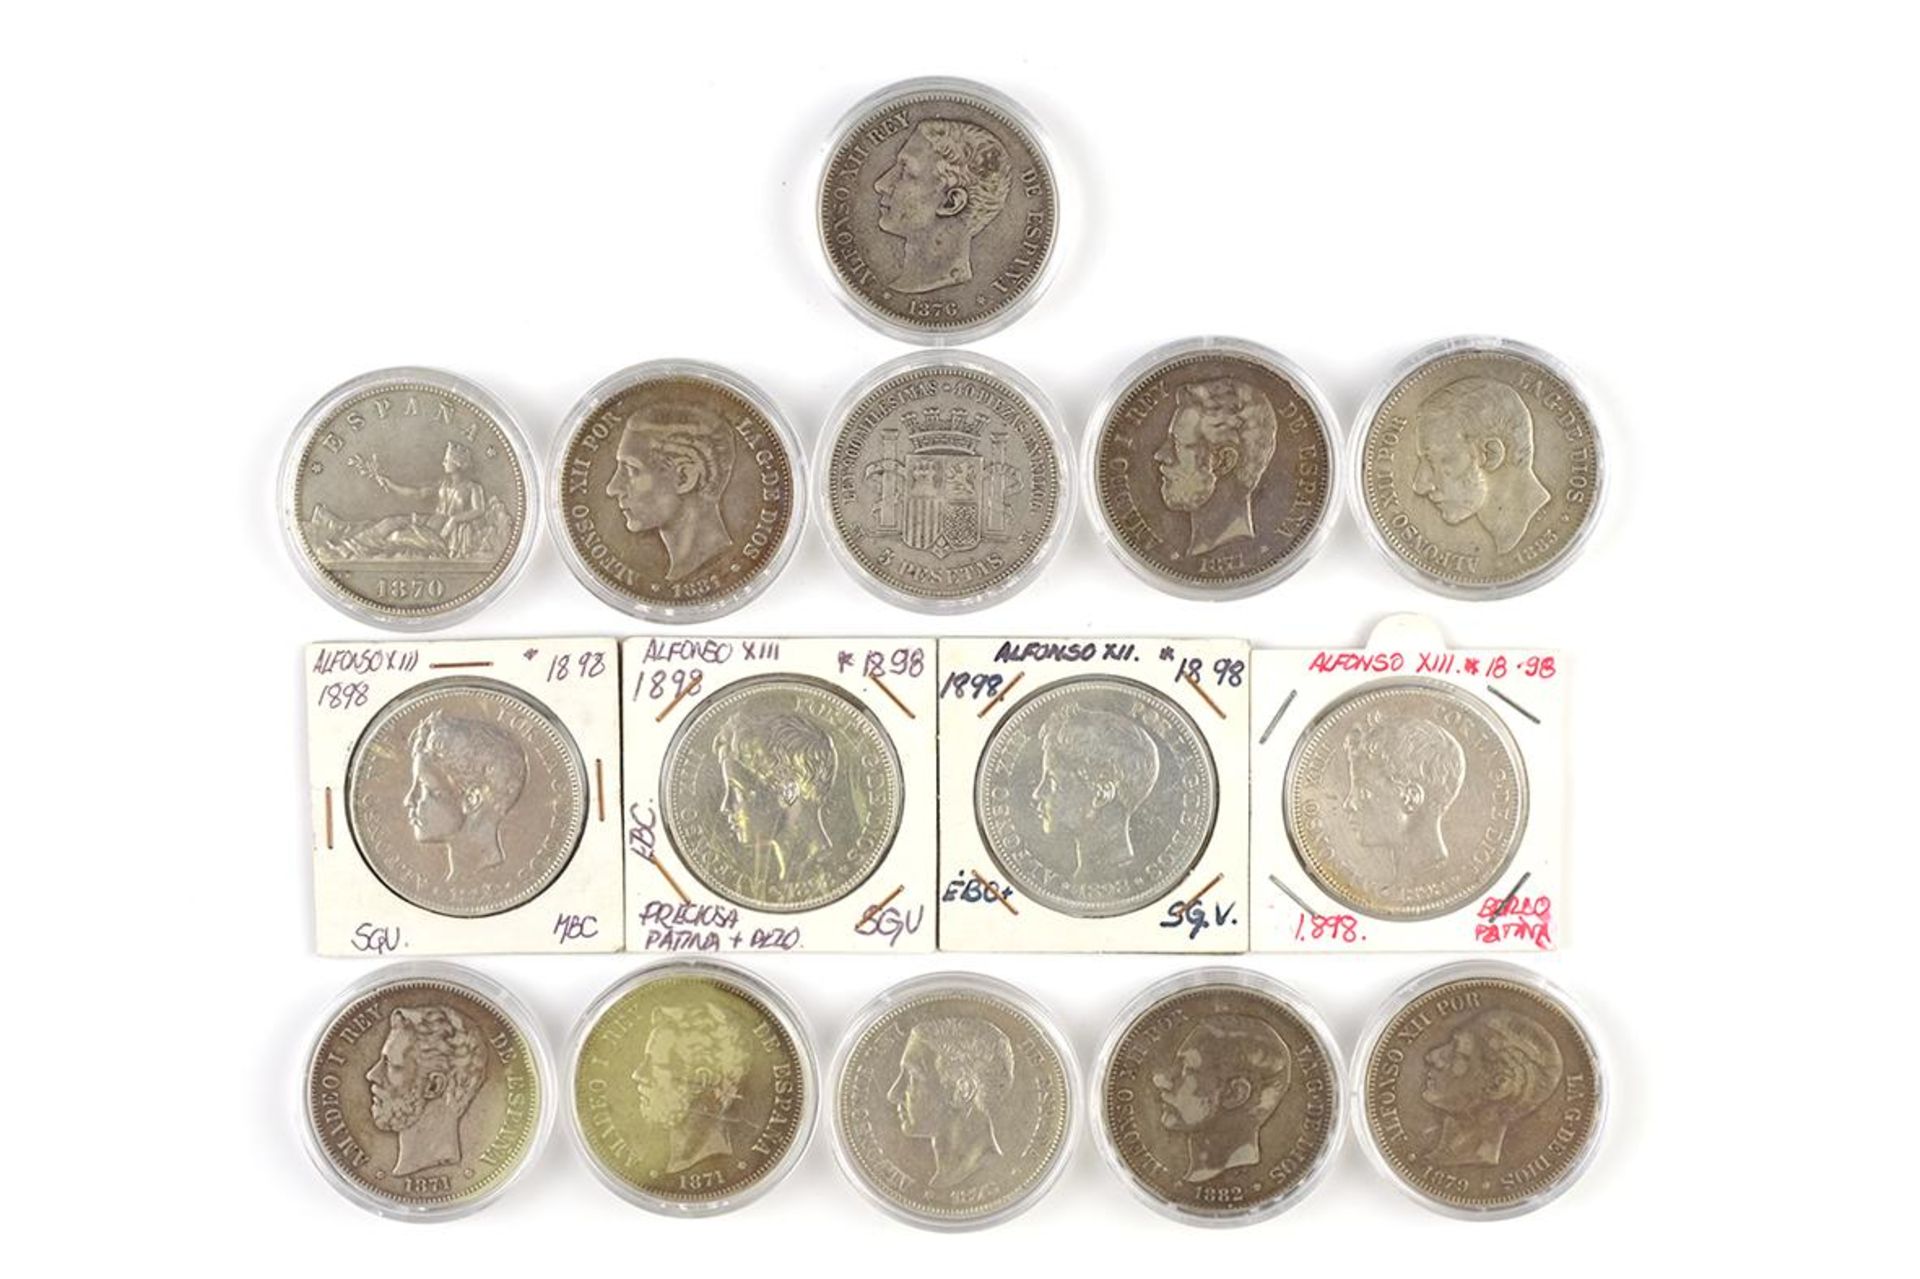 Lote formado por quince monedas de plata de 5 pesetas